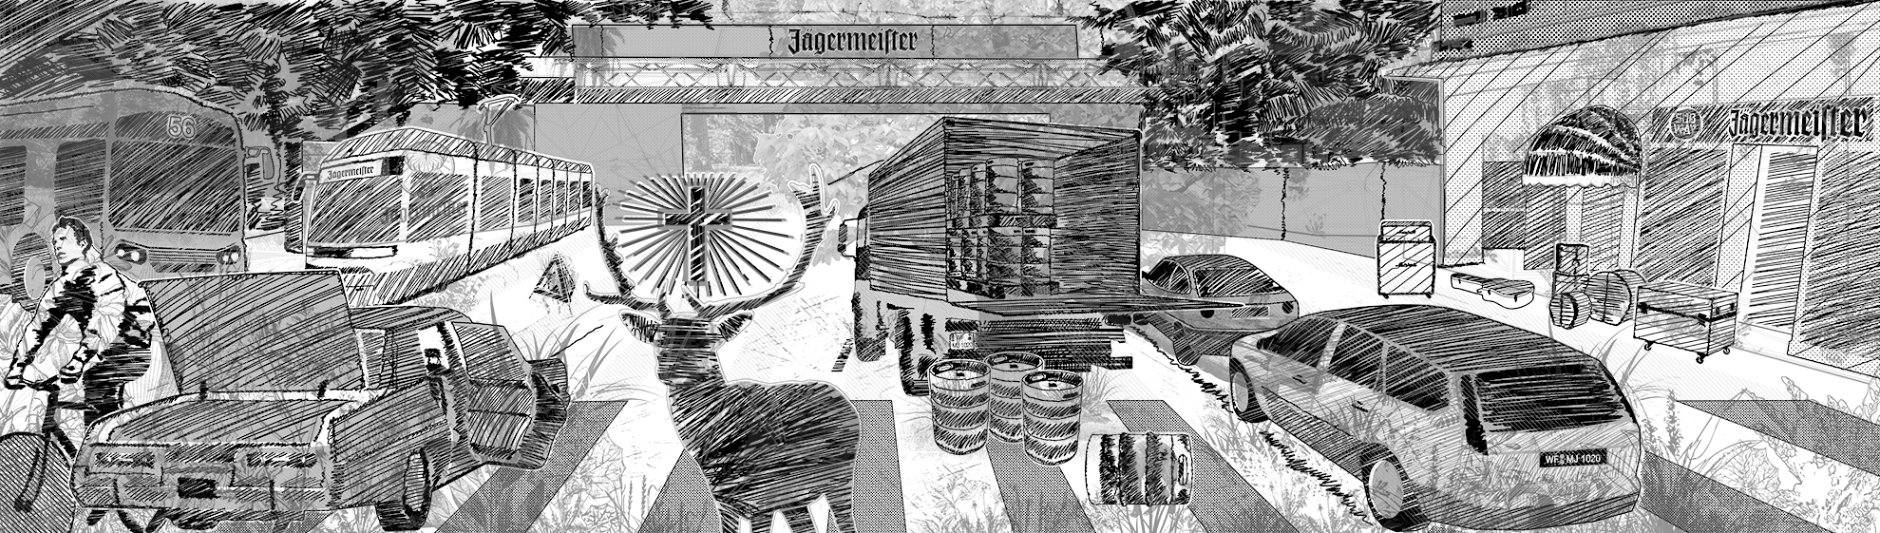 Jägermeister Lounge Corner Design, Jägermeister, Subway Club Köln, Cologne, Köln, Interior Design, wanddesign, wandkunst, mural, artwork, waldbrand media, project a, christopher baer, gestaltung, illustration, media artwork